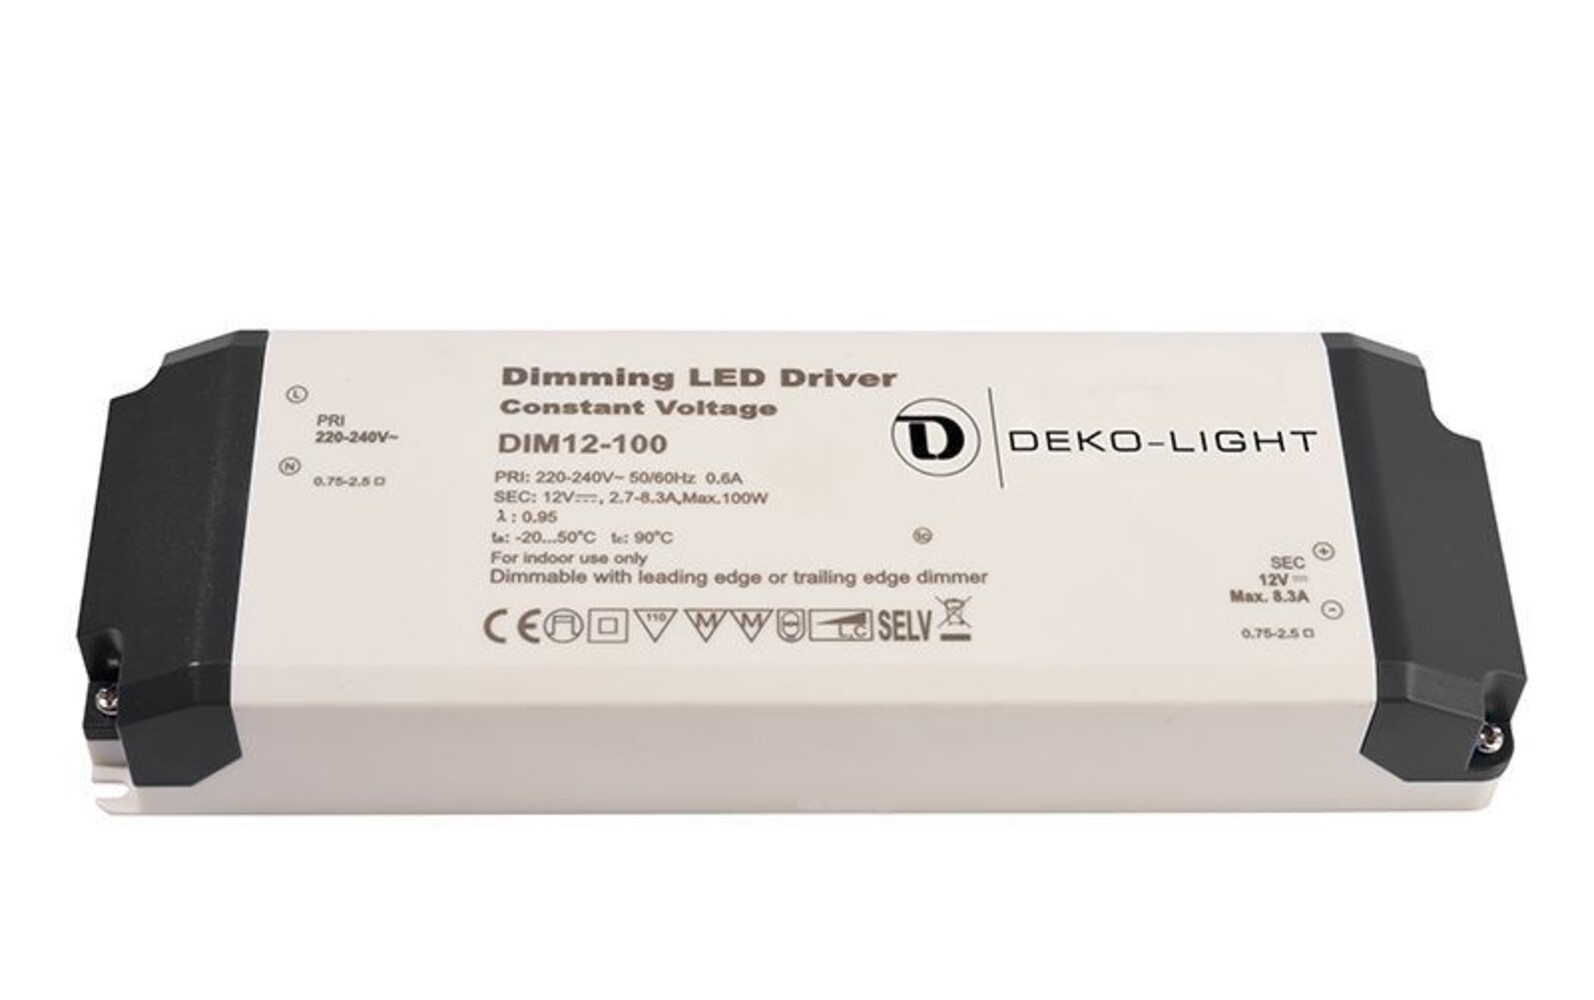 Hochwertiges LED Netzteil der Marke Deko-Light mit integrierter Phasenan- und Abschnittsdimmer-Funktion